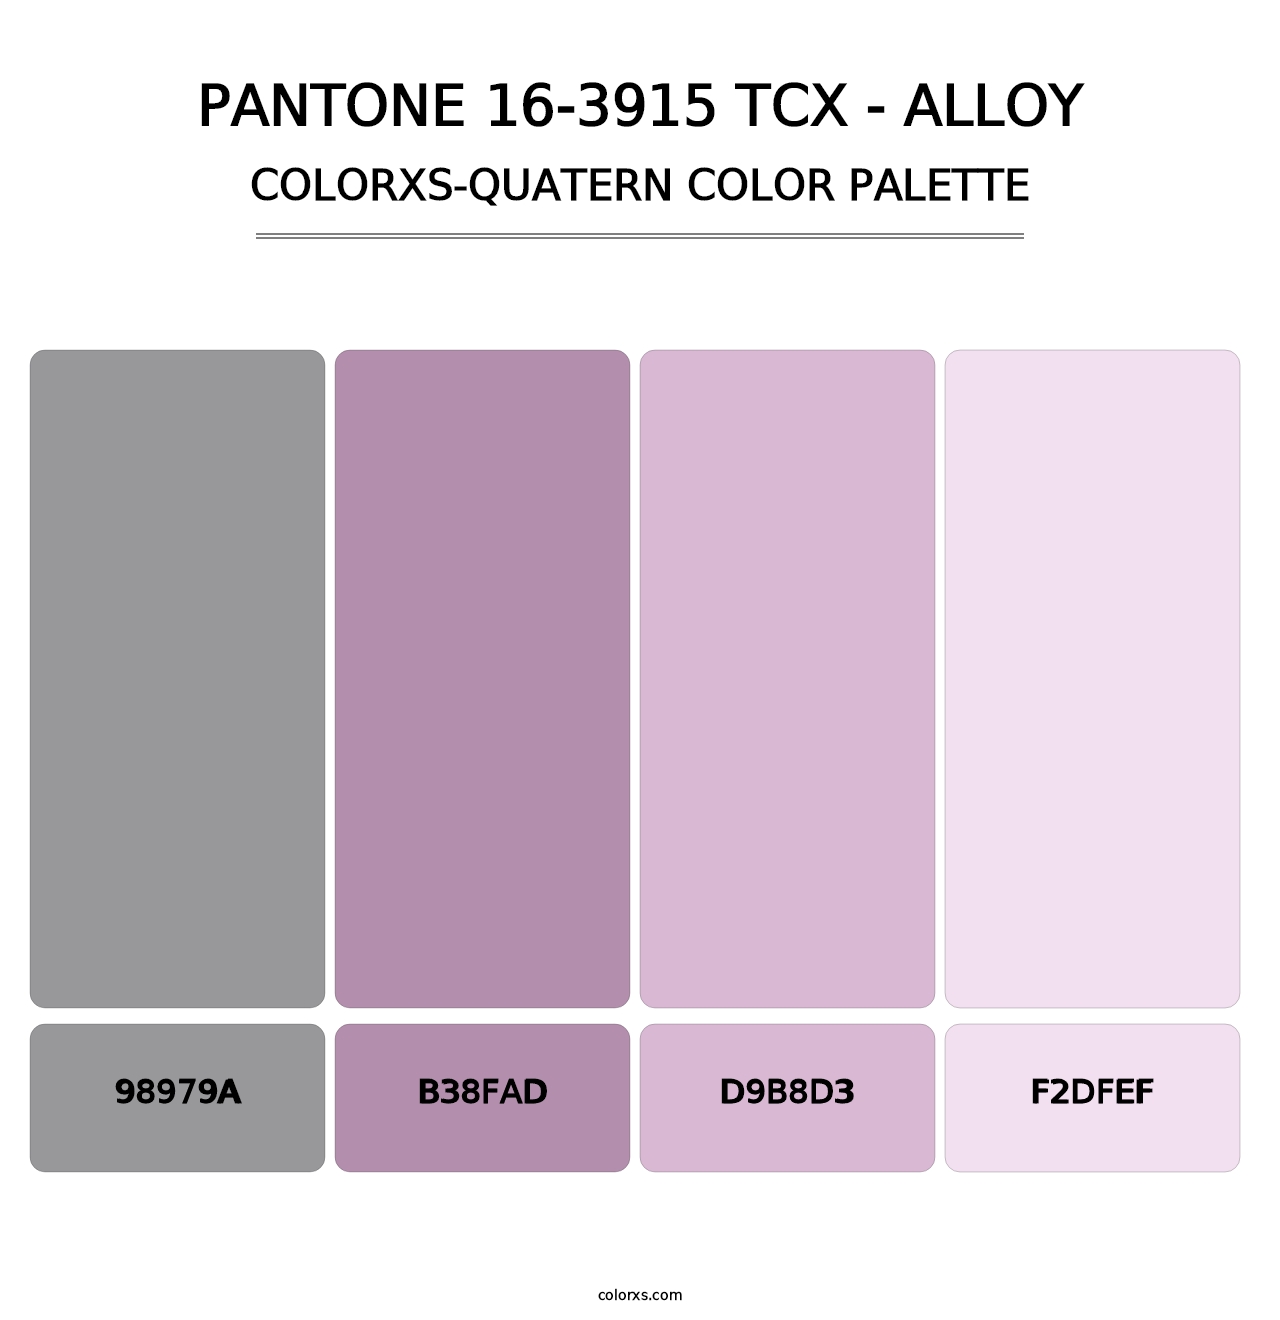 PANTONE 16-3915 TCX - Alloy - Colorxs Quatern Palette